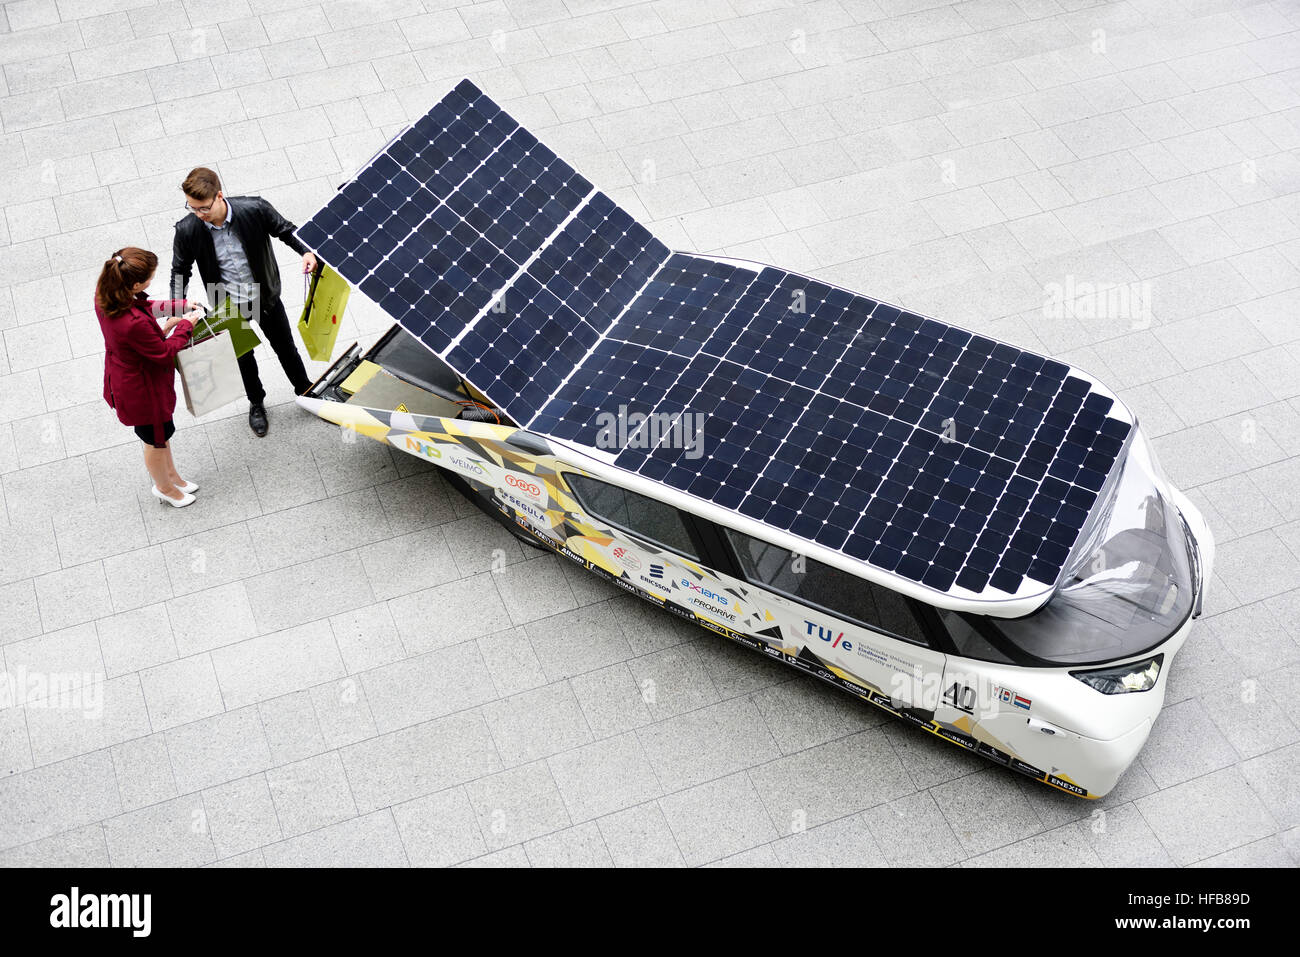 Stella Lux, das Energie-positiven Familie Solarauto aus niederländischen Solar Team-Eindhoven, Sieger in der 2015 World Solar Challenge. Stockfoto